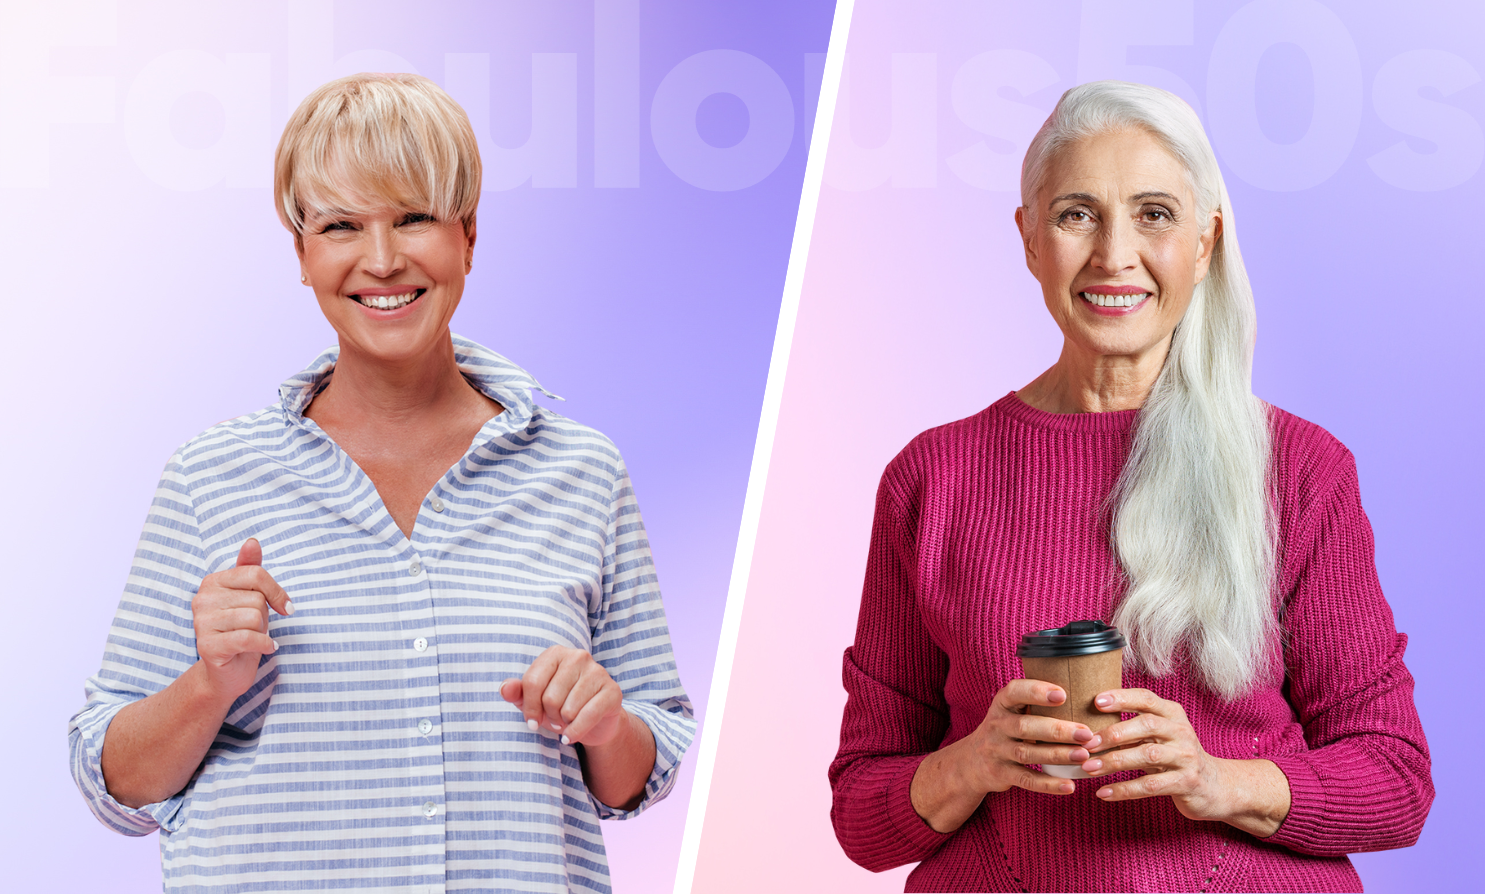 Long Hair vs Short Hair - Hairstyles for women over 50